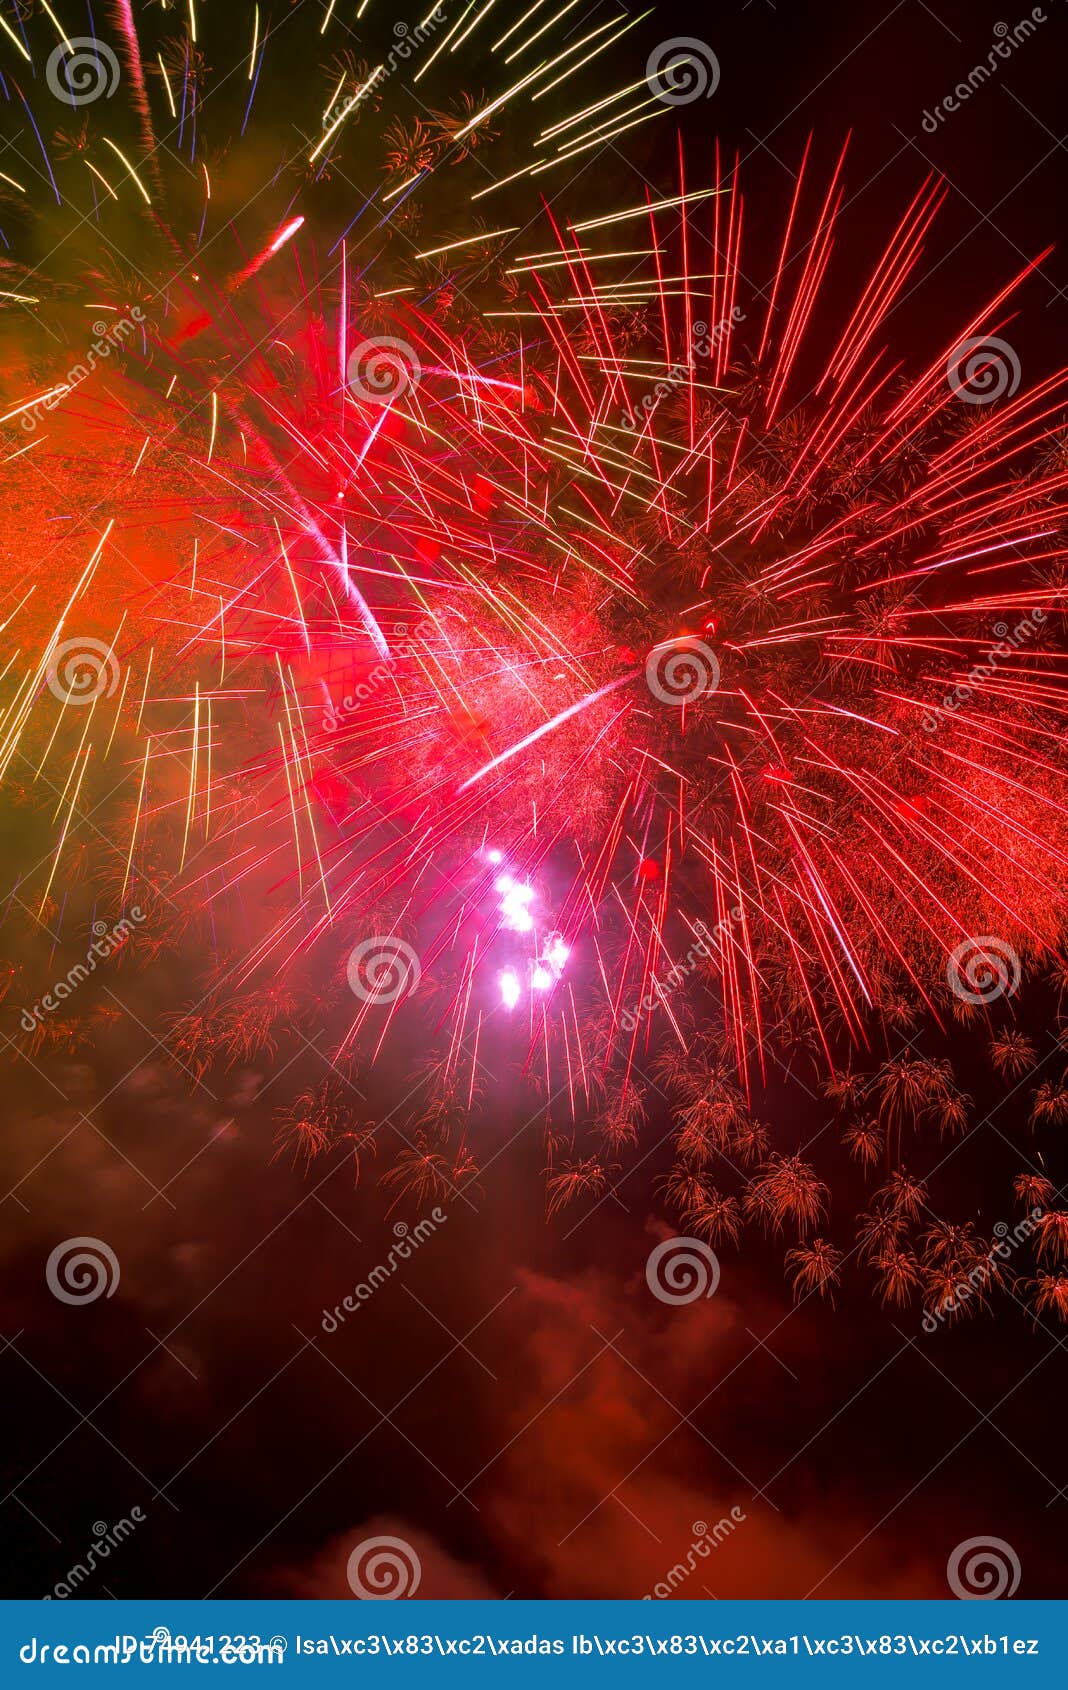 fireworks-fuegos artificiales